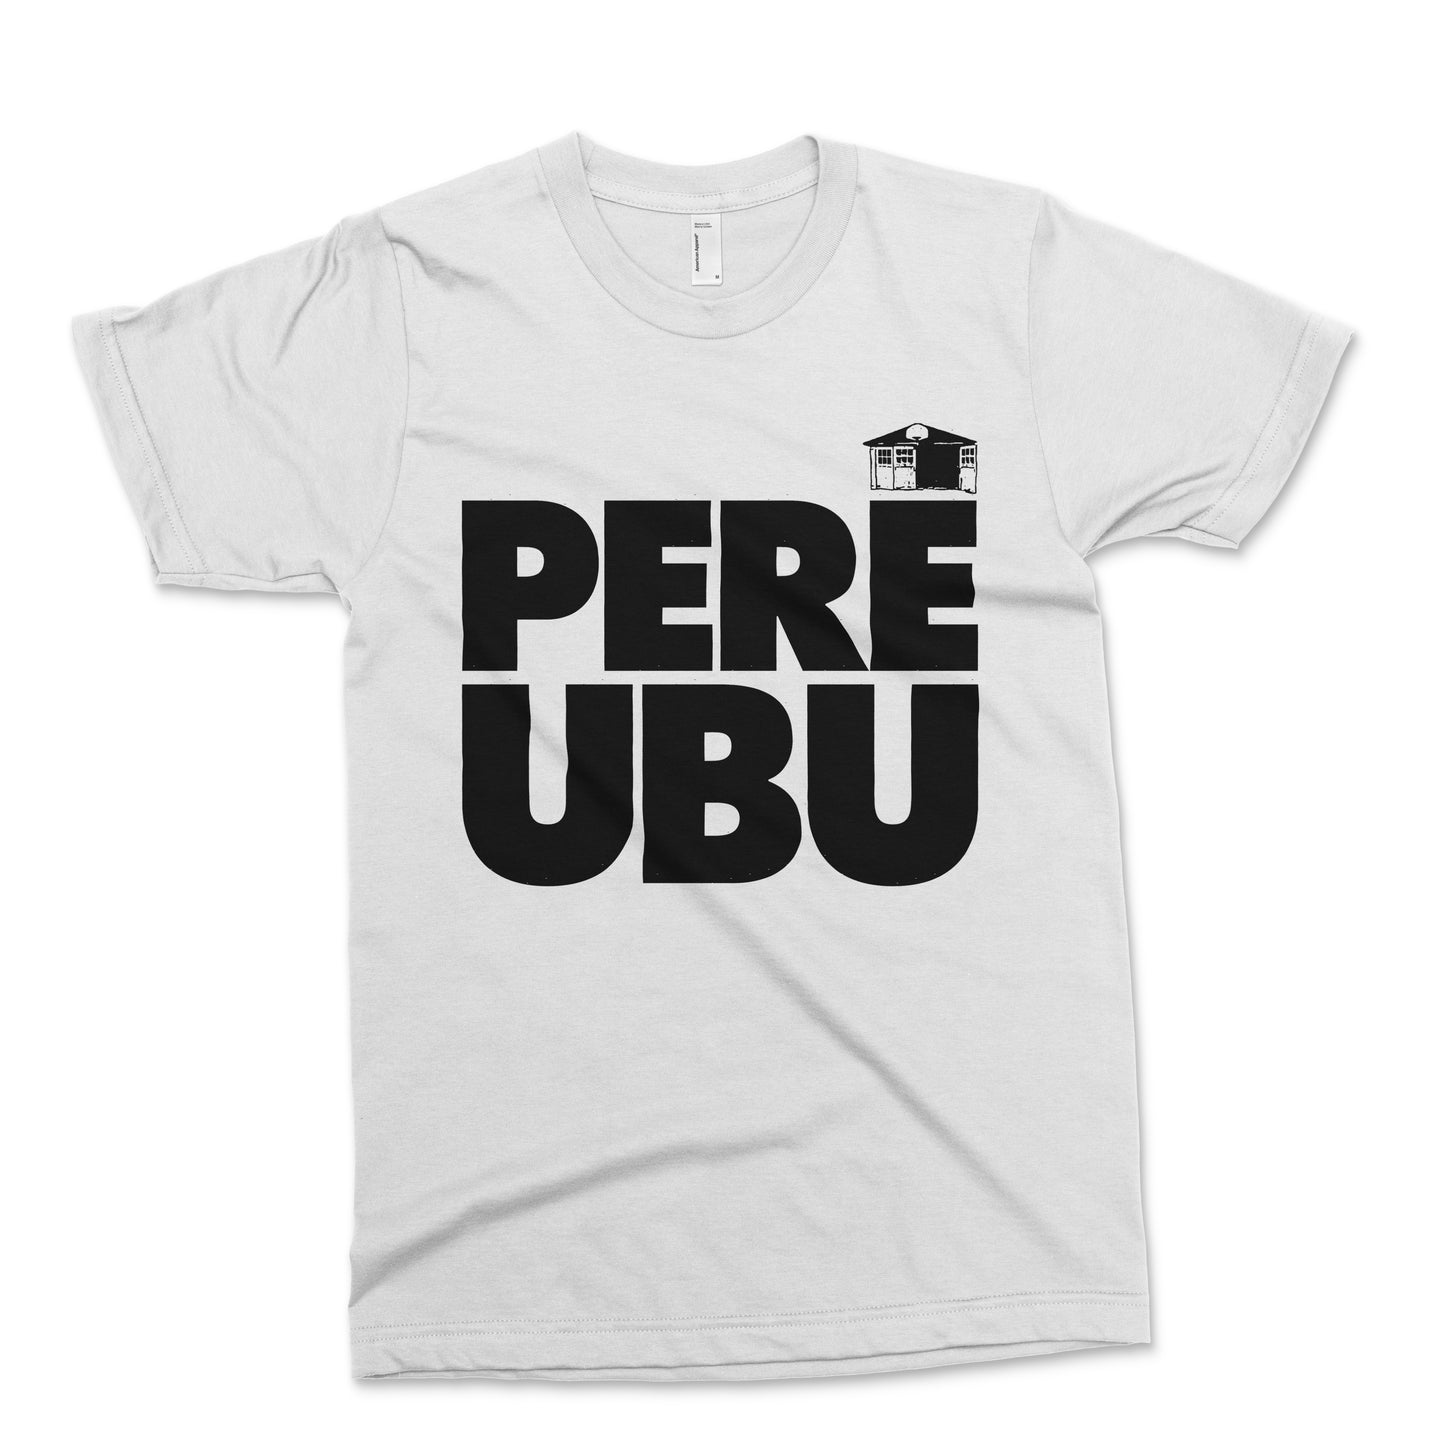 Pere Ubu - Classic T in White